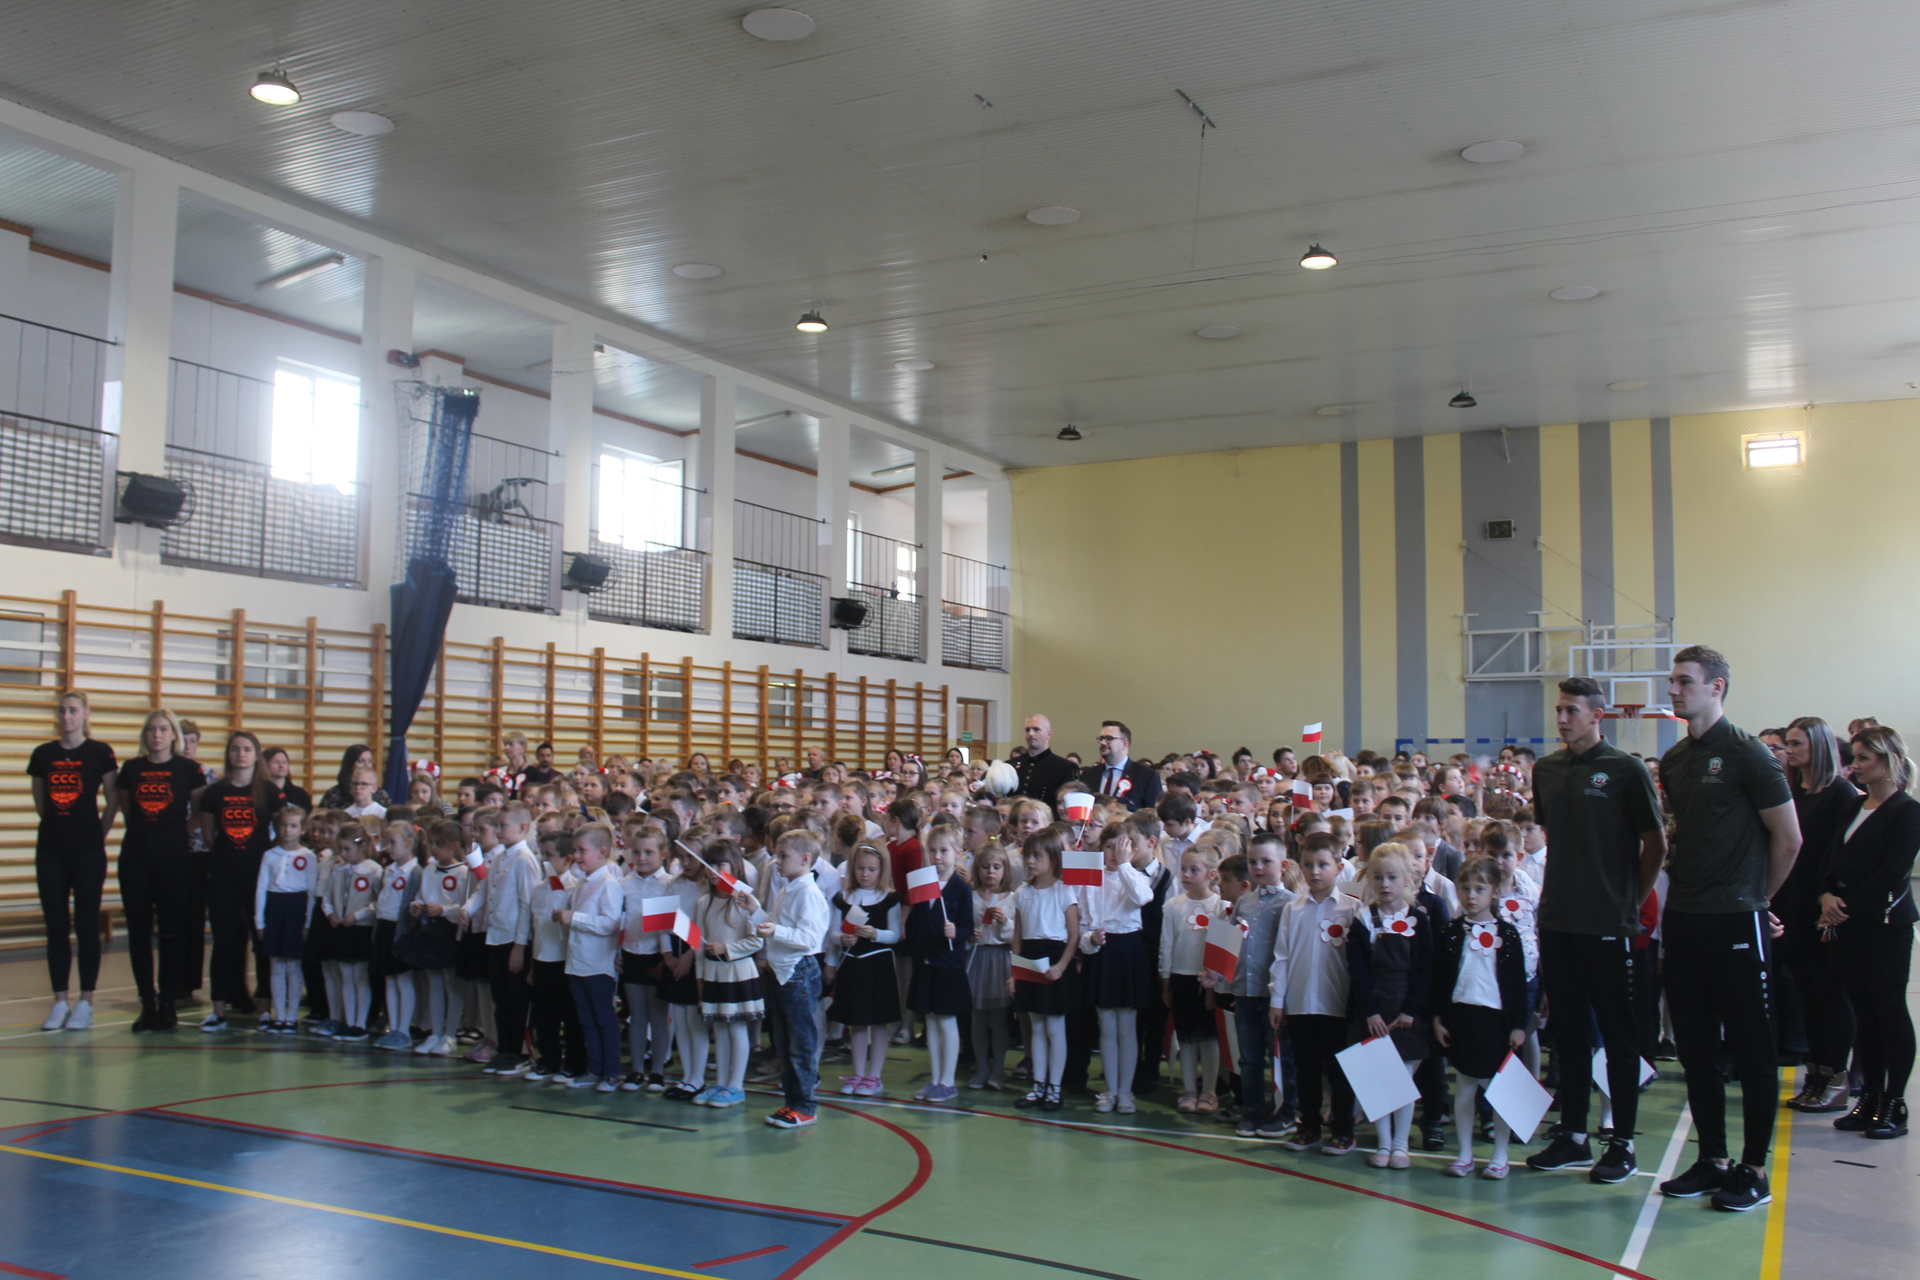 W Polkowicach chóralnie zaśpiewali hymn Polski (WIDEO, FOTO)  